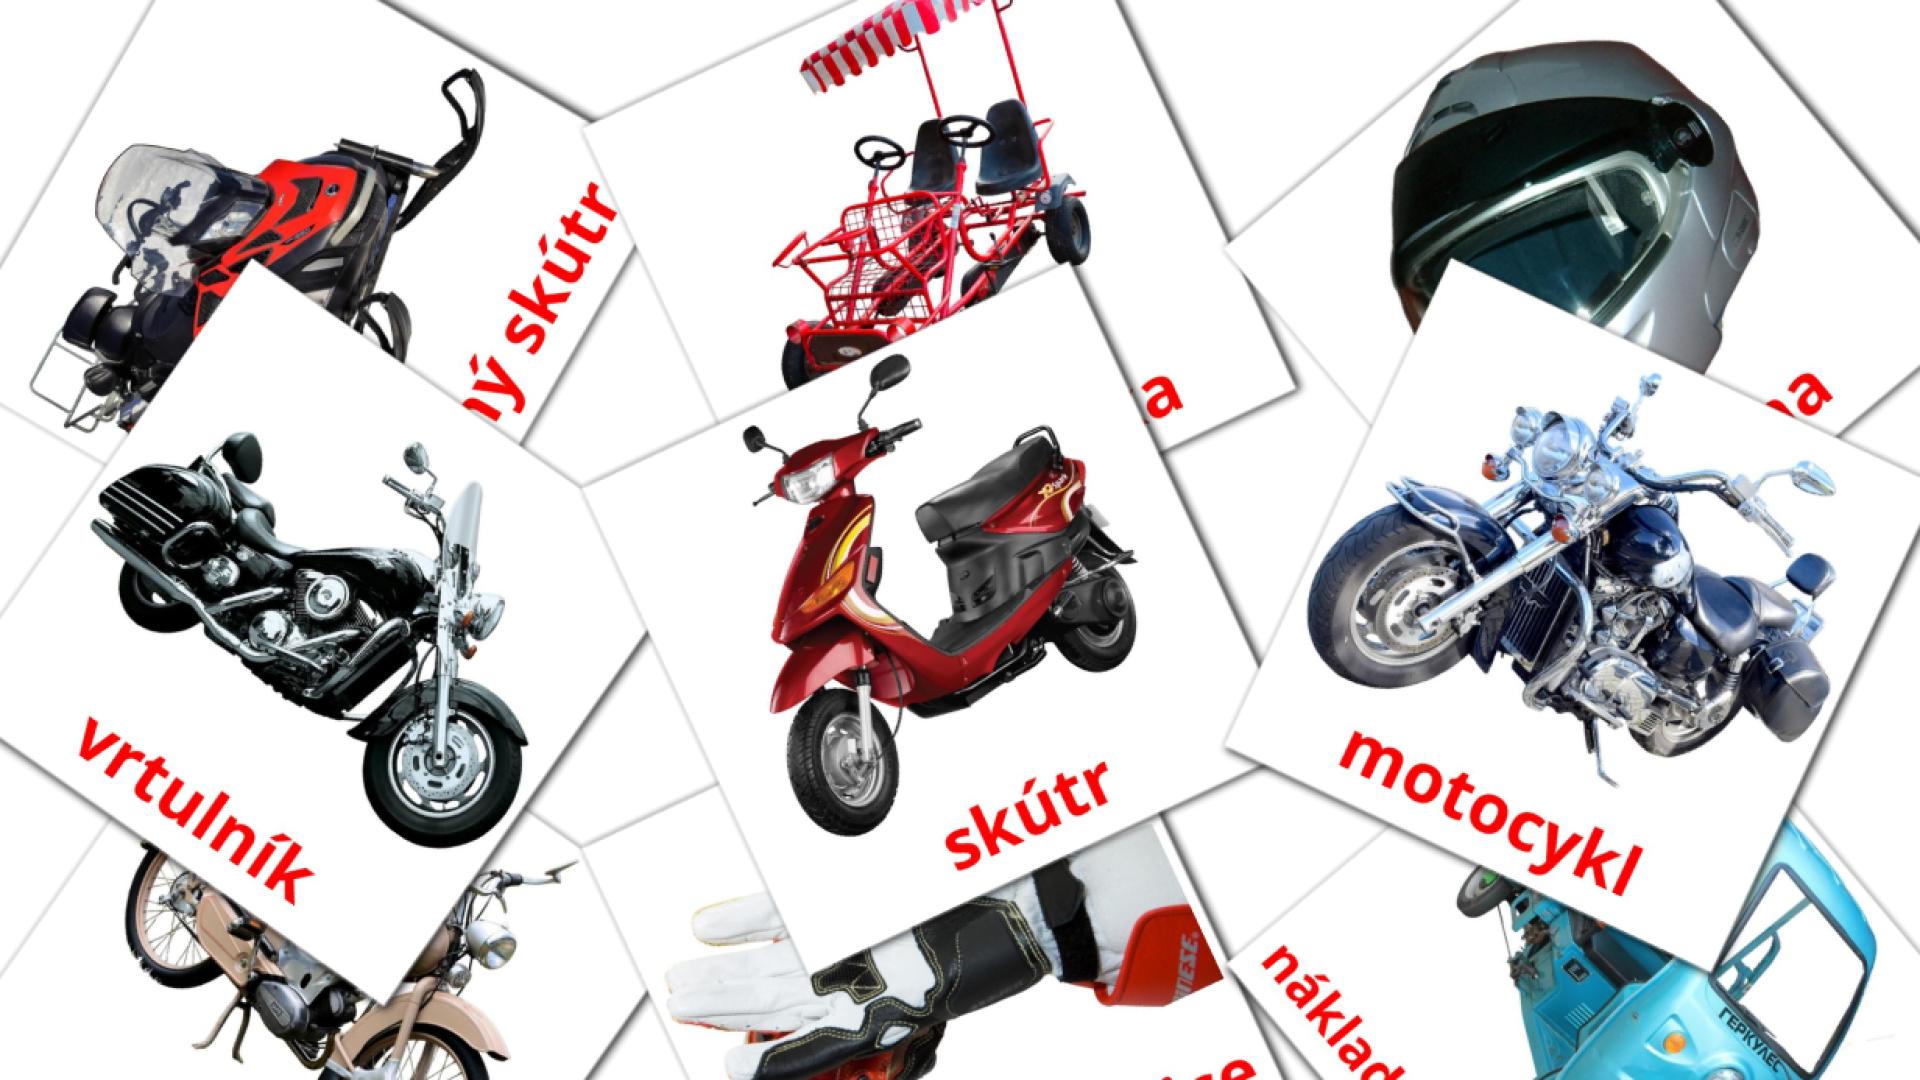 12 Bildkarten für Motocykly